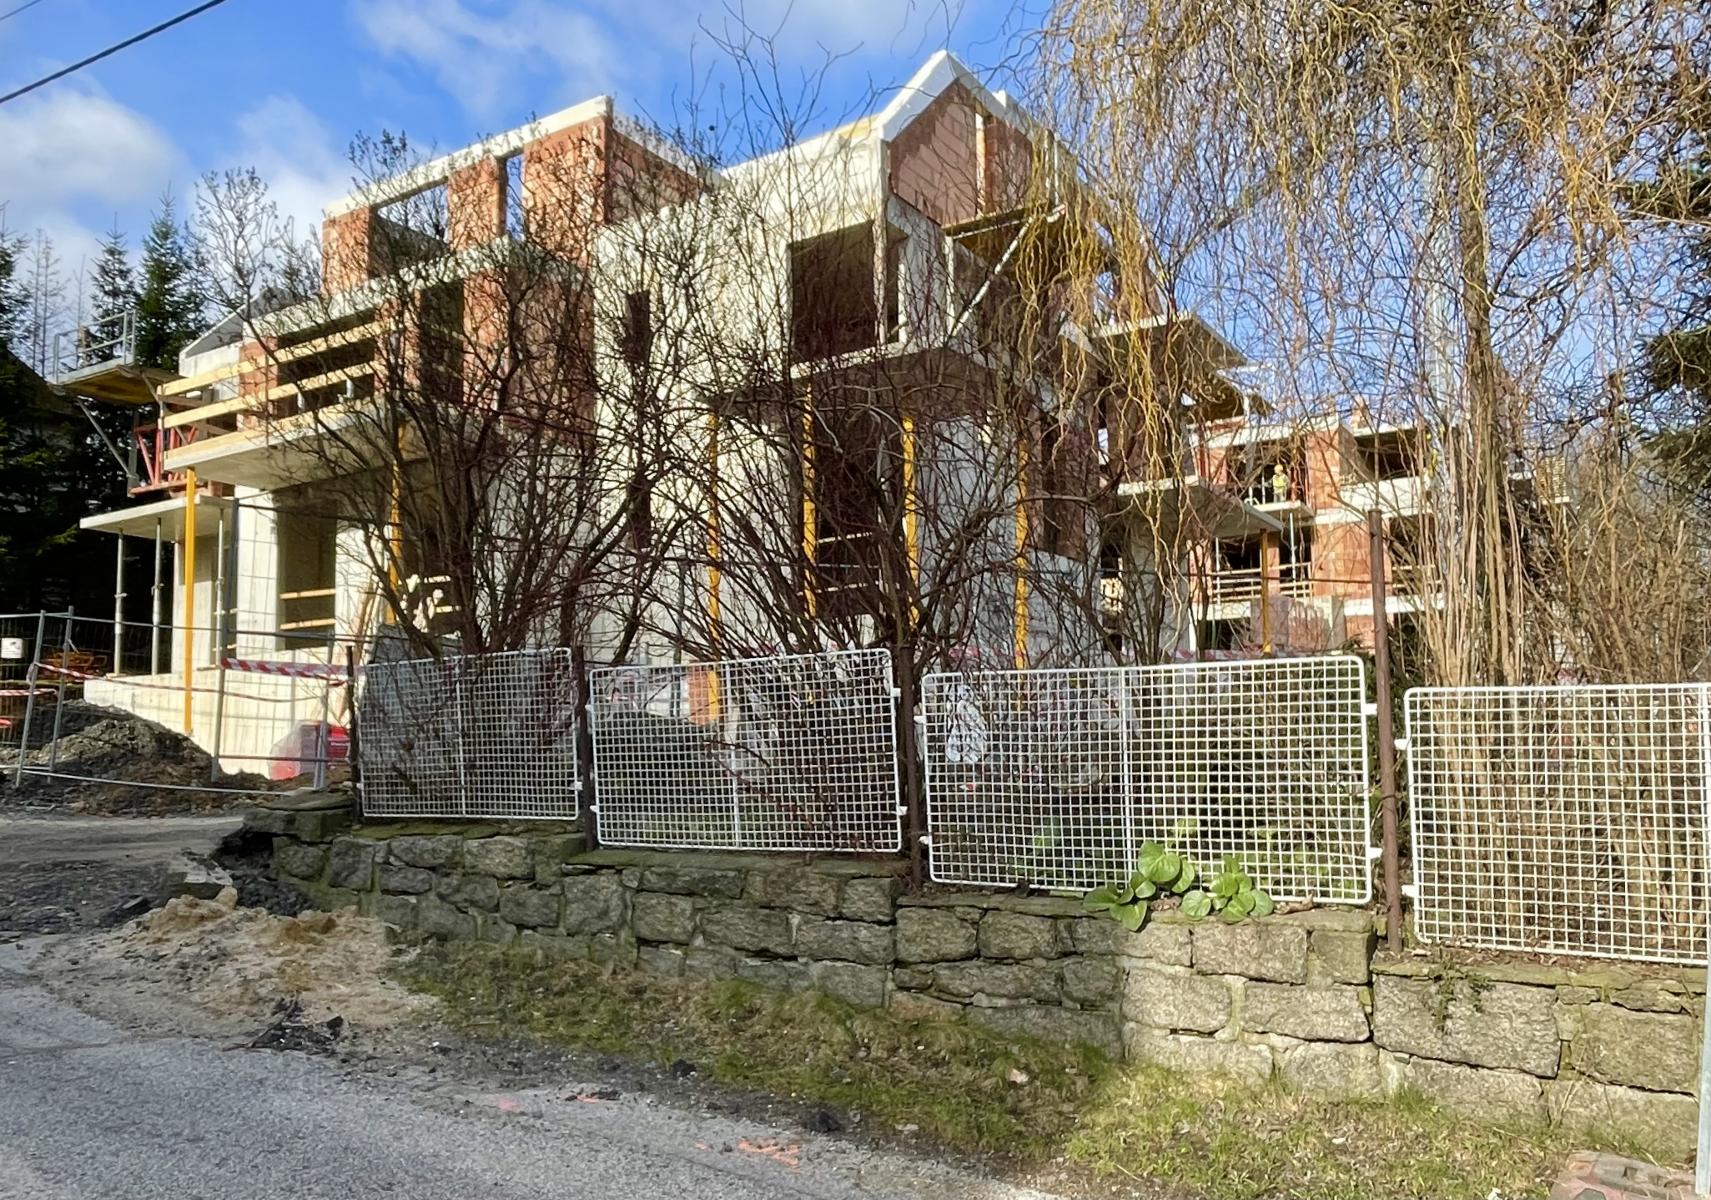 Prodej bytu 3+kk s dvěma terasami a předzahrádkou v developerském projektu v Liberci Rochlici, obrázek č. 2